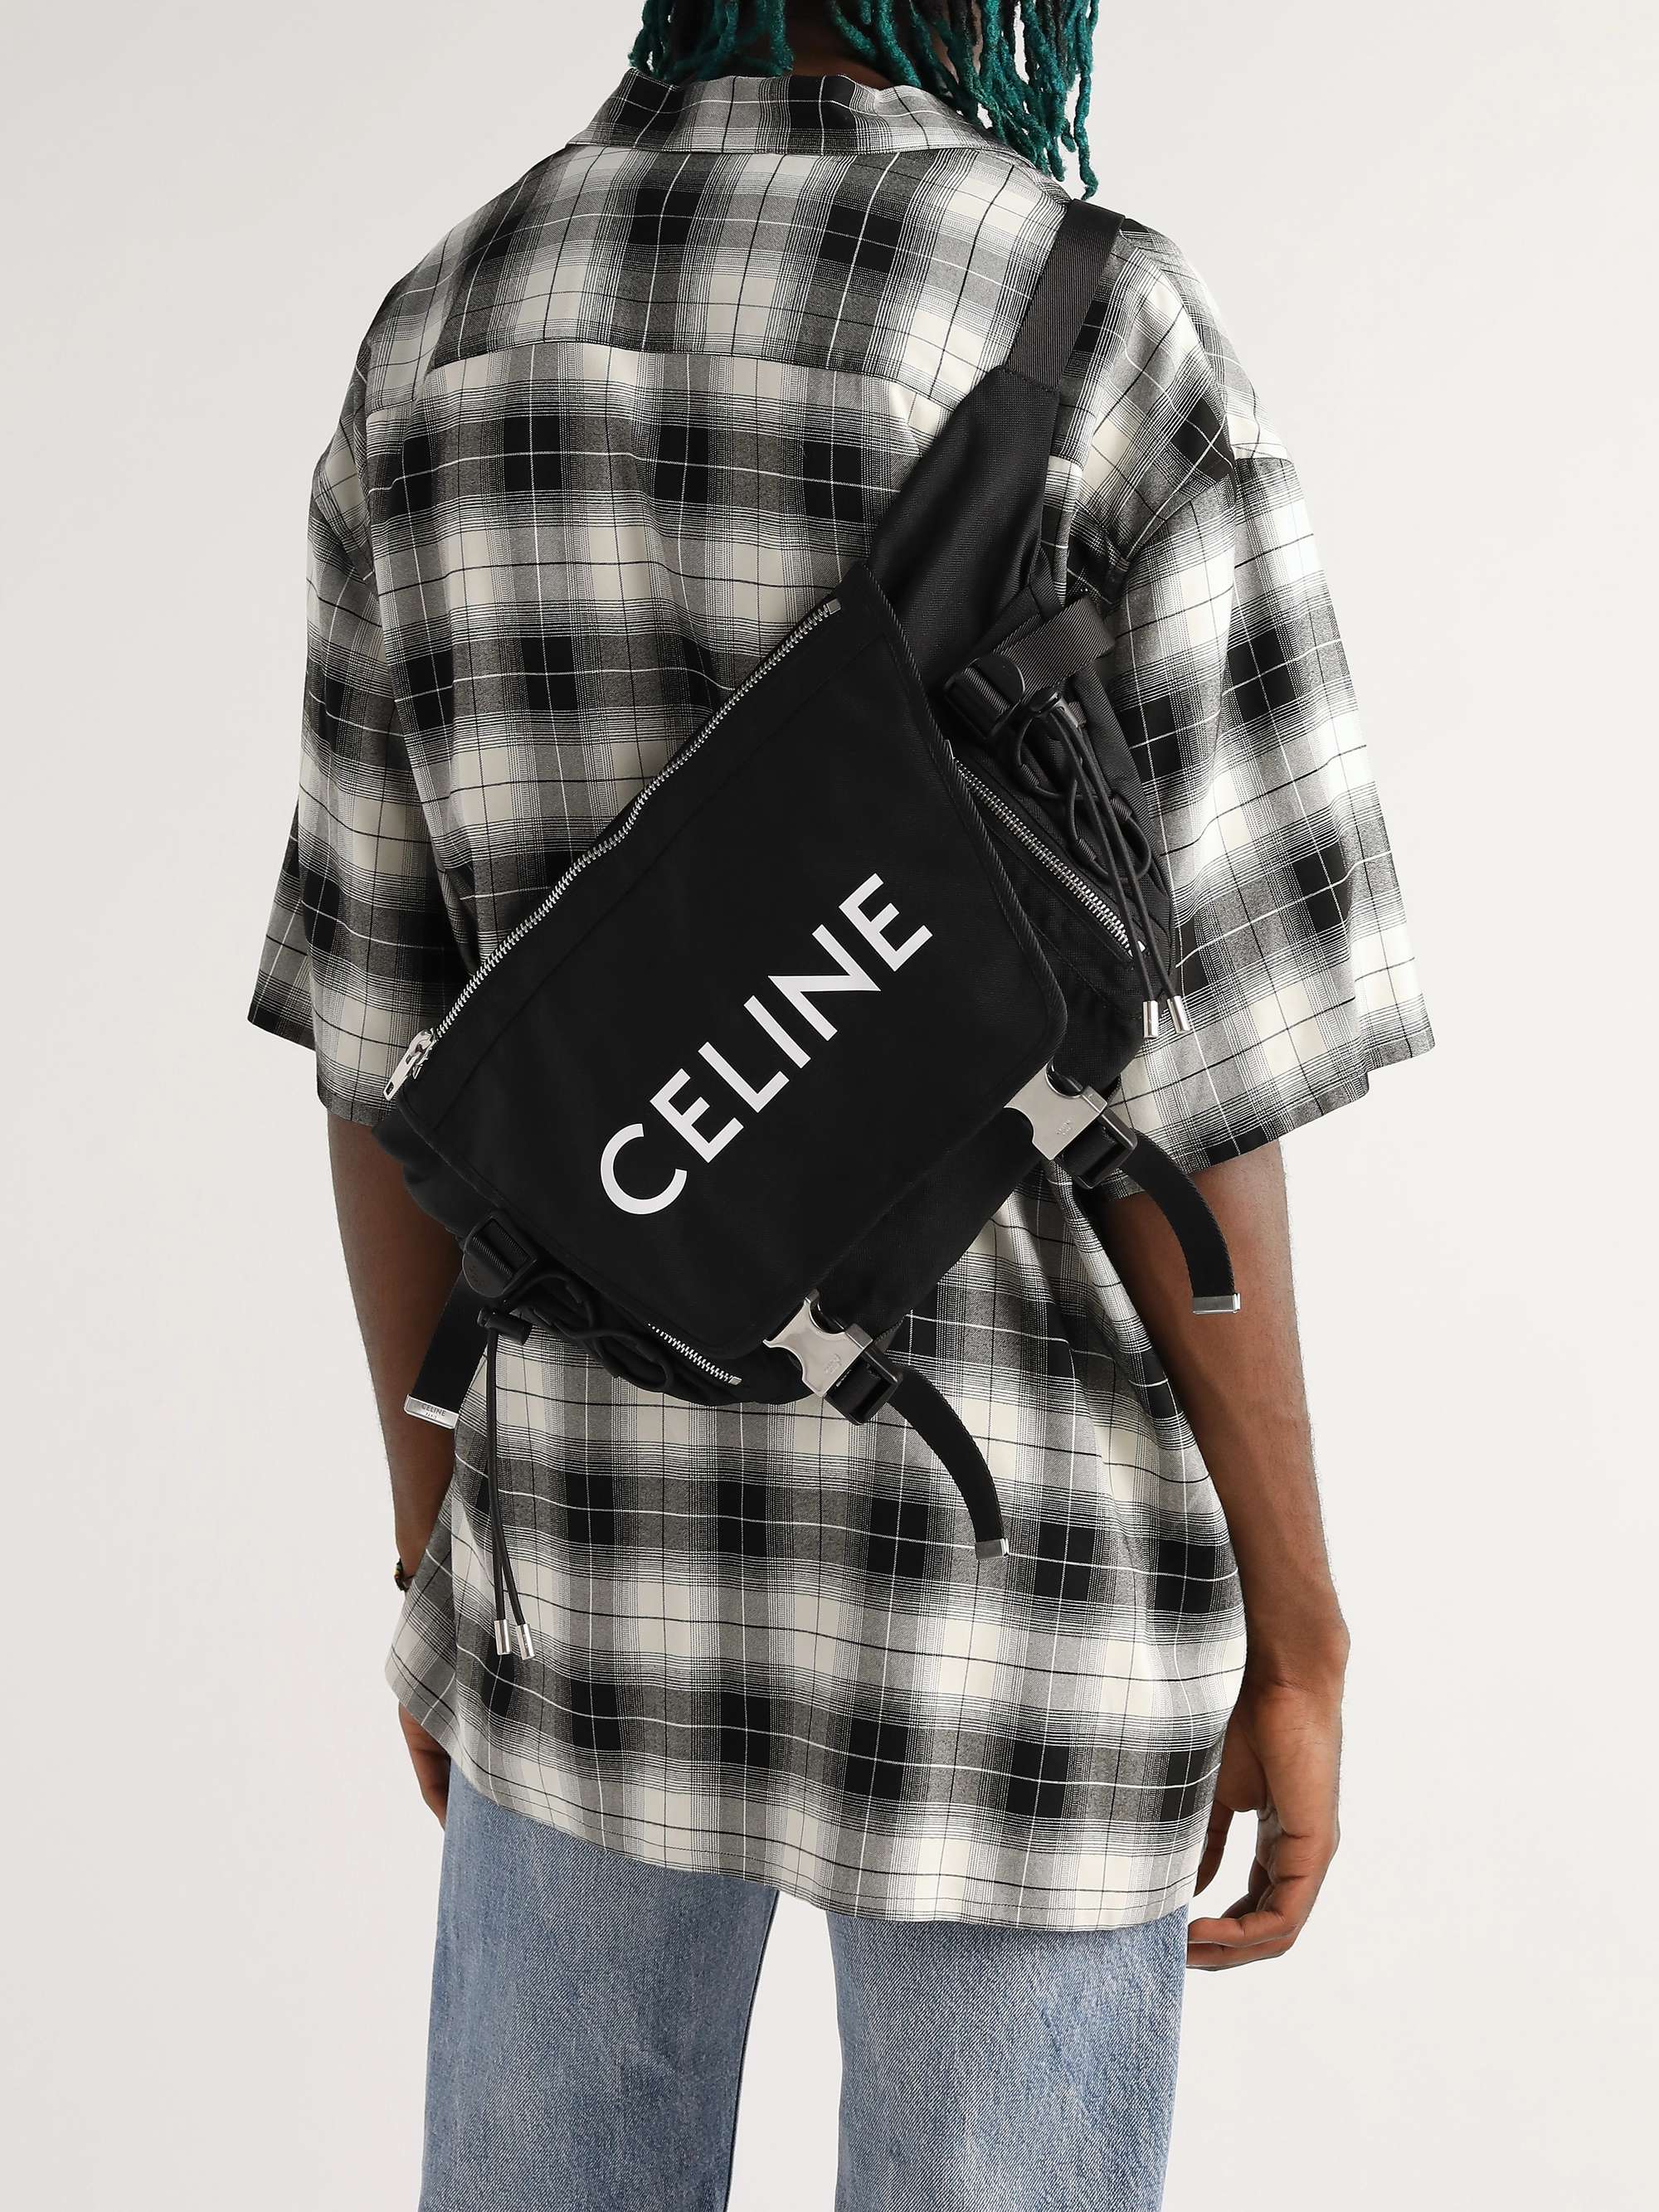 CELINE HOMME Logo-Print Canvas Messenger Bag